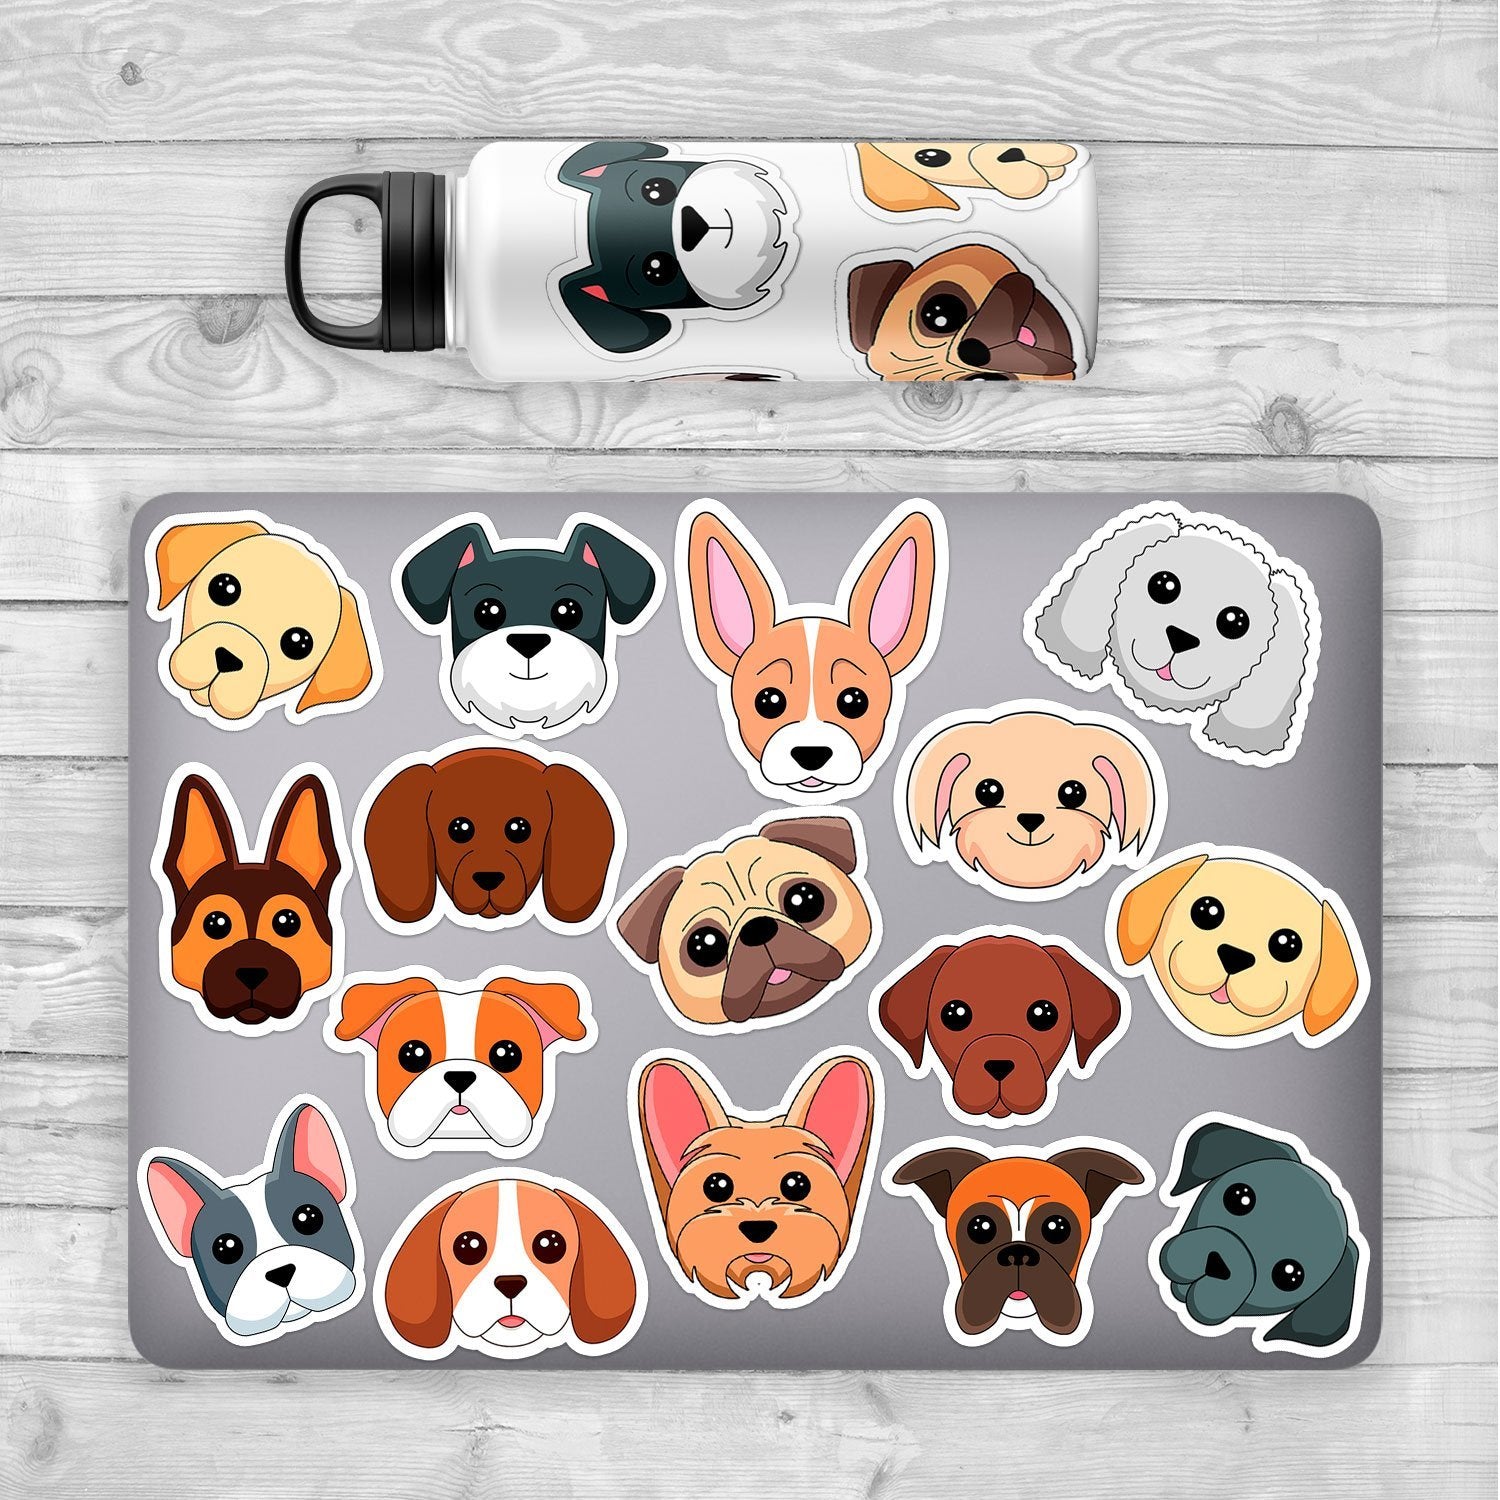 German Shepherd Sticker - Dogstickers.co